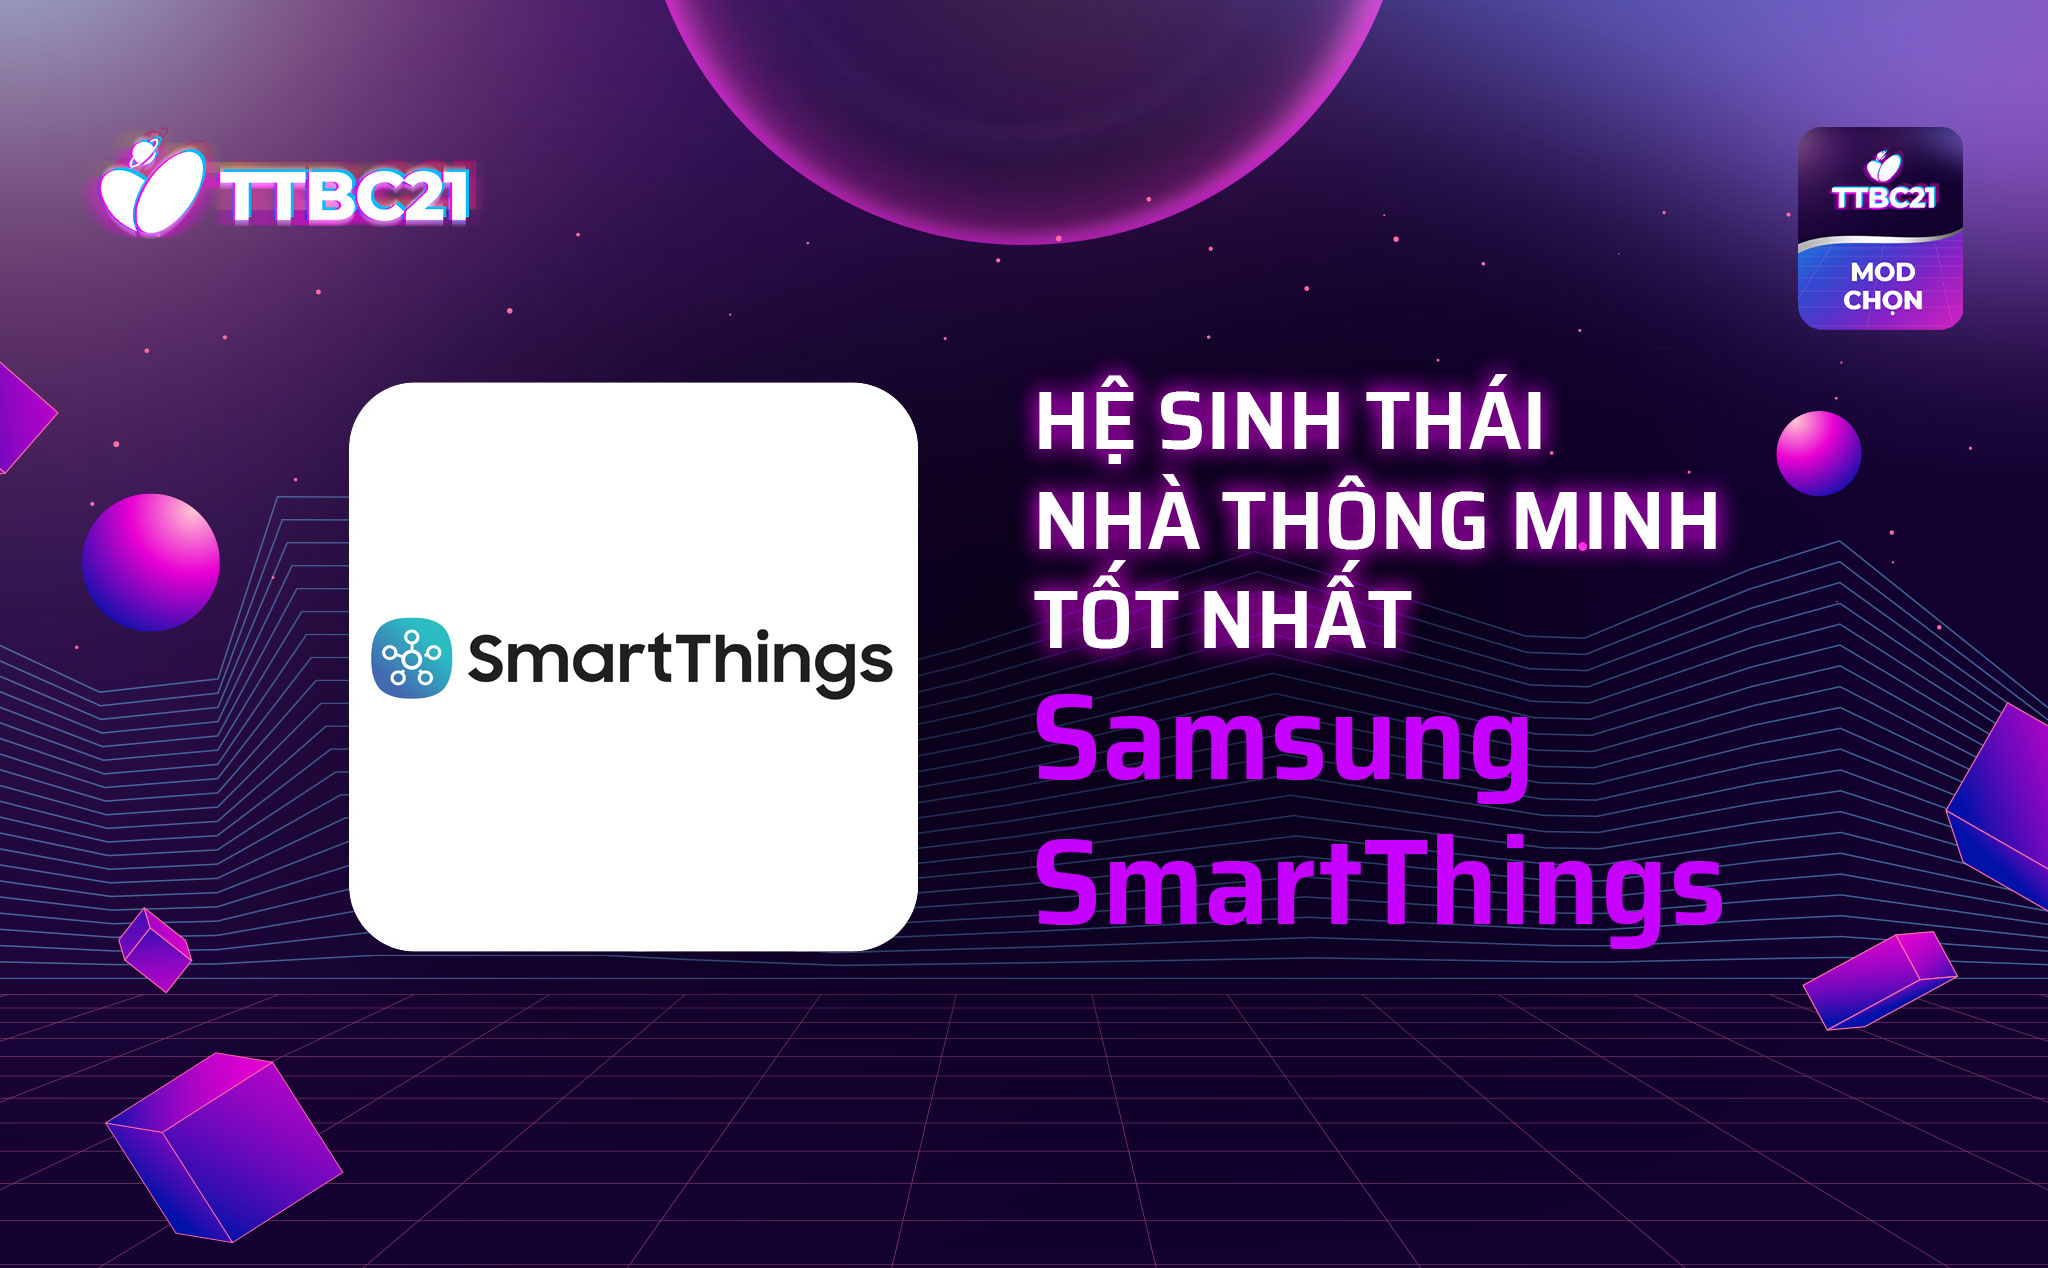 TTBC21 - Mod Choice: Hệ sinh thái nhà thông minh tốt nhất - Samsung SmartThings